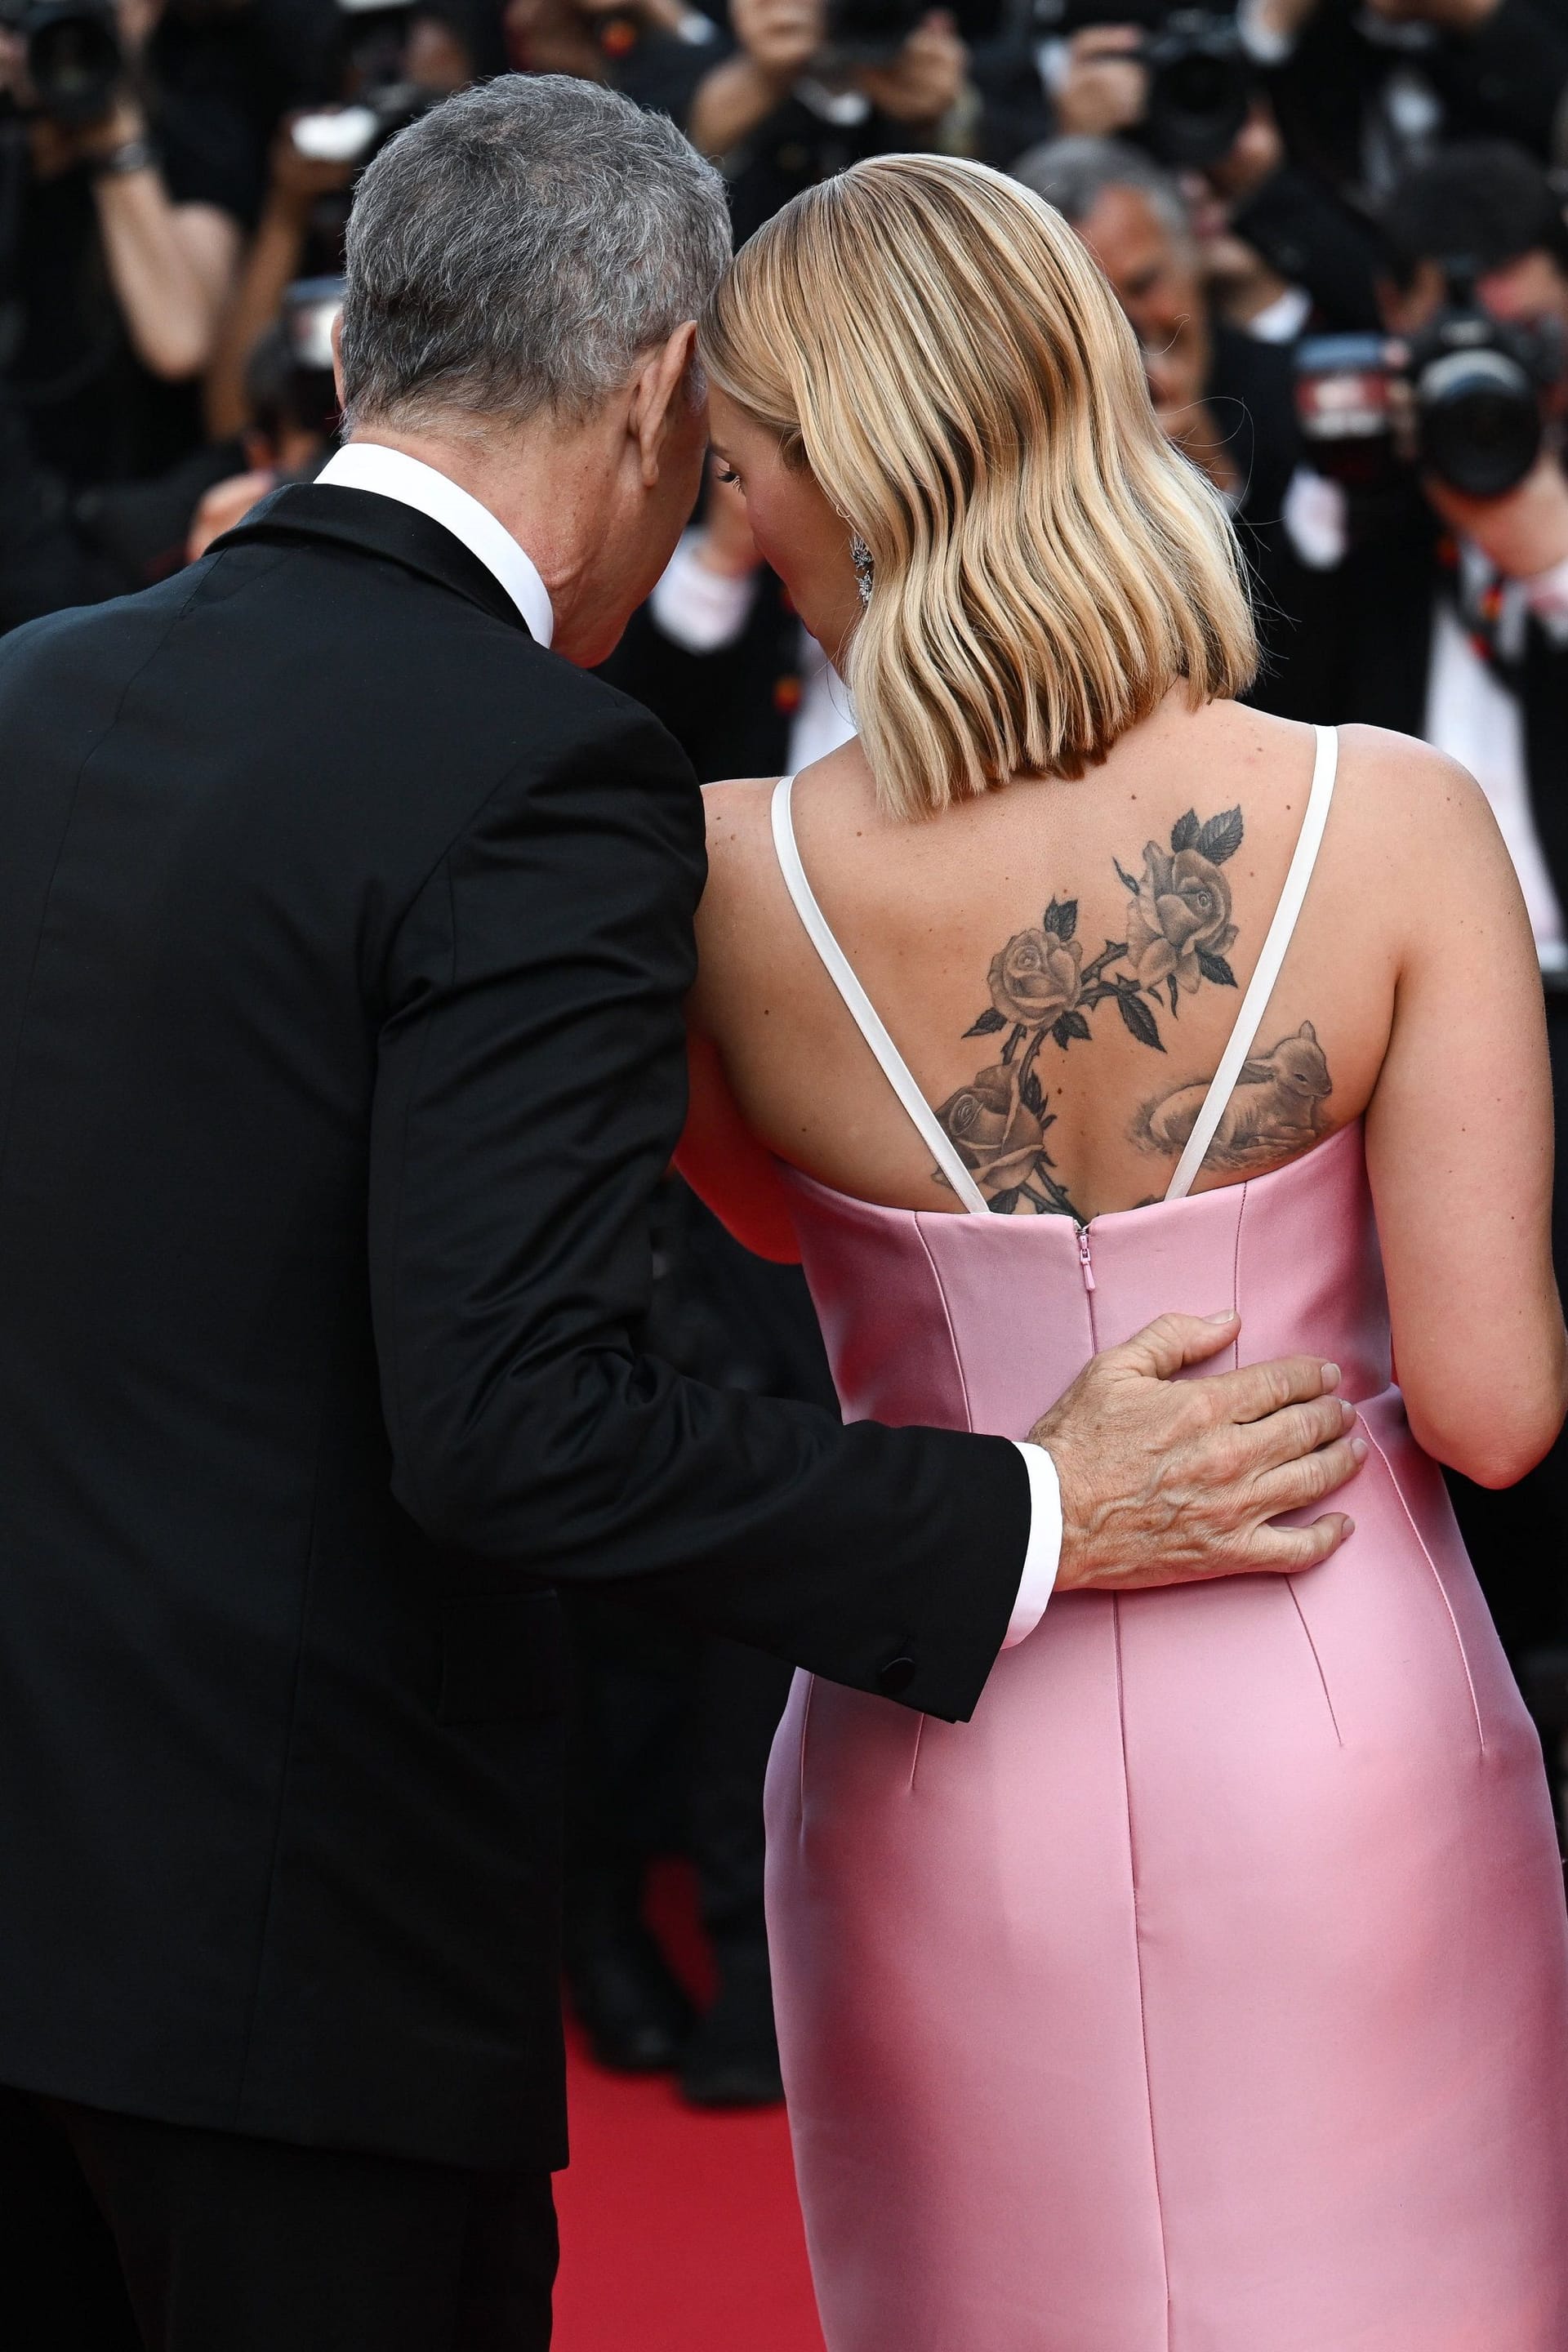 Auch ein Rücken kann entzücken: Tom Hanks und Scarlett Johansson zeigen sich von hinten.